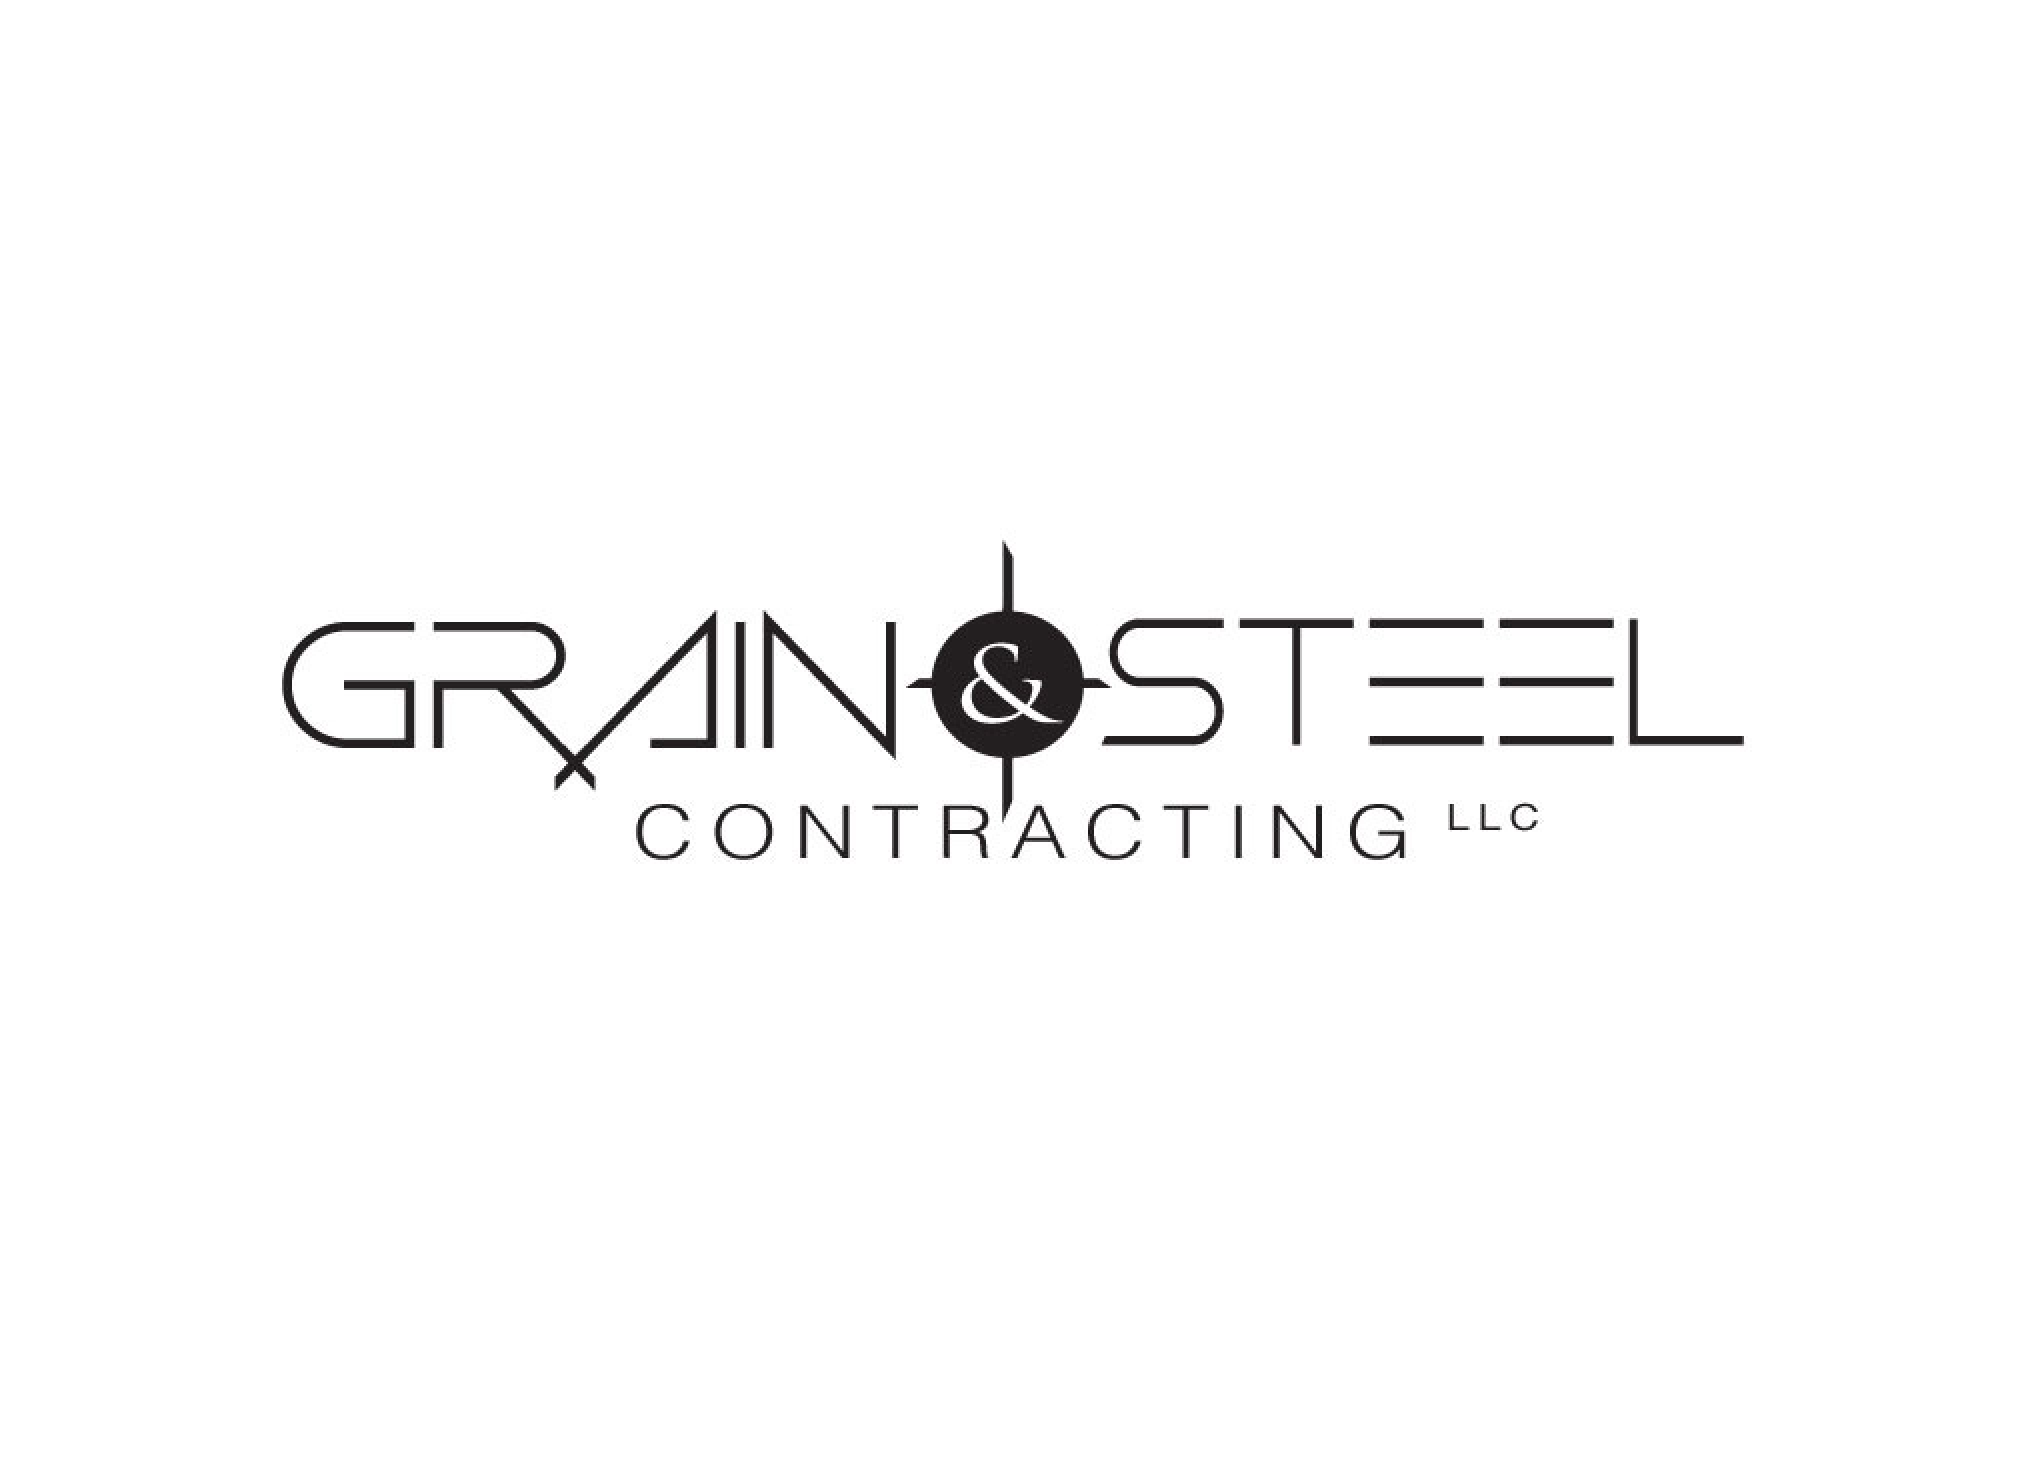 Grain & Steel Contracting LLC logo